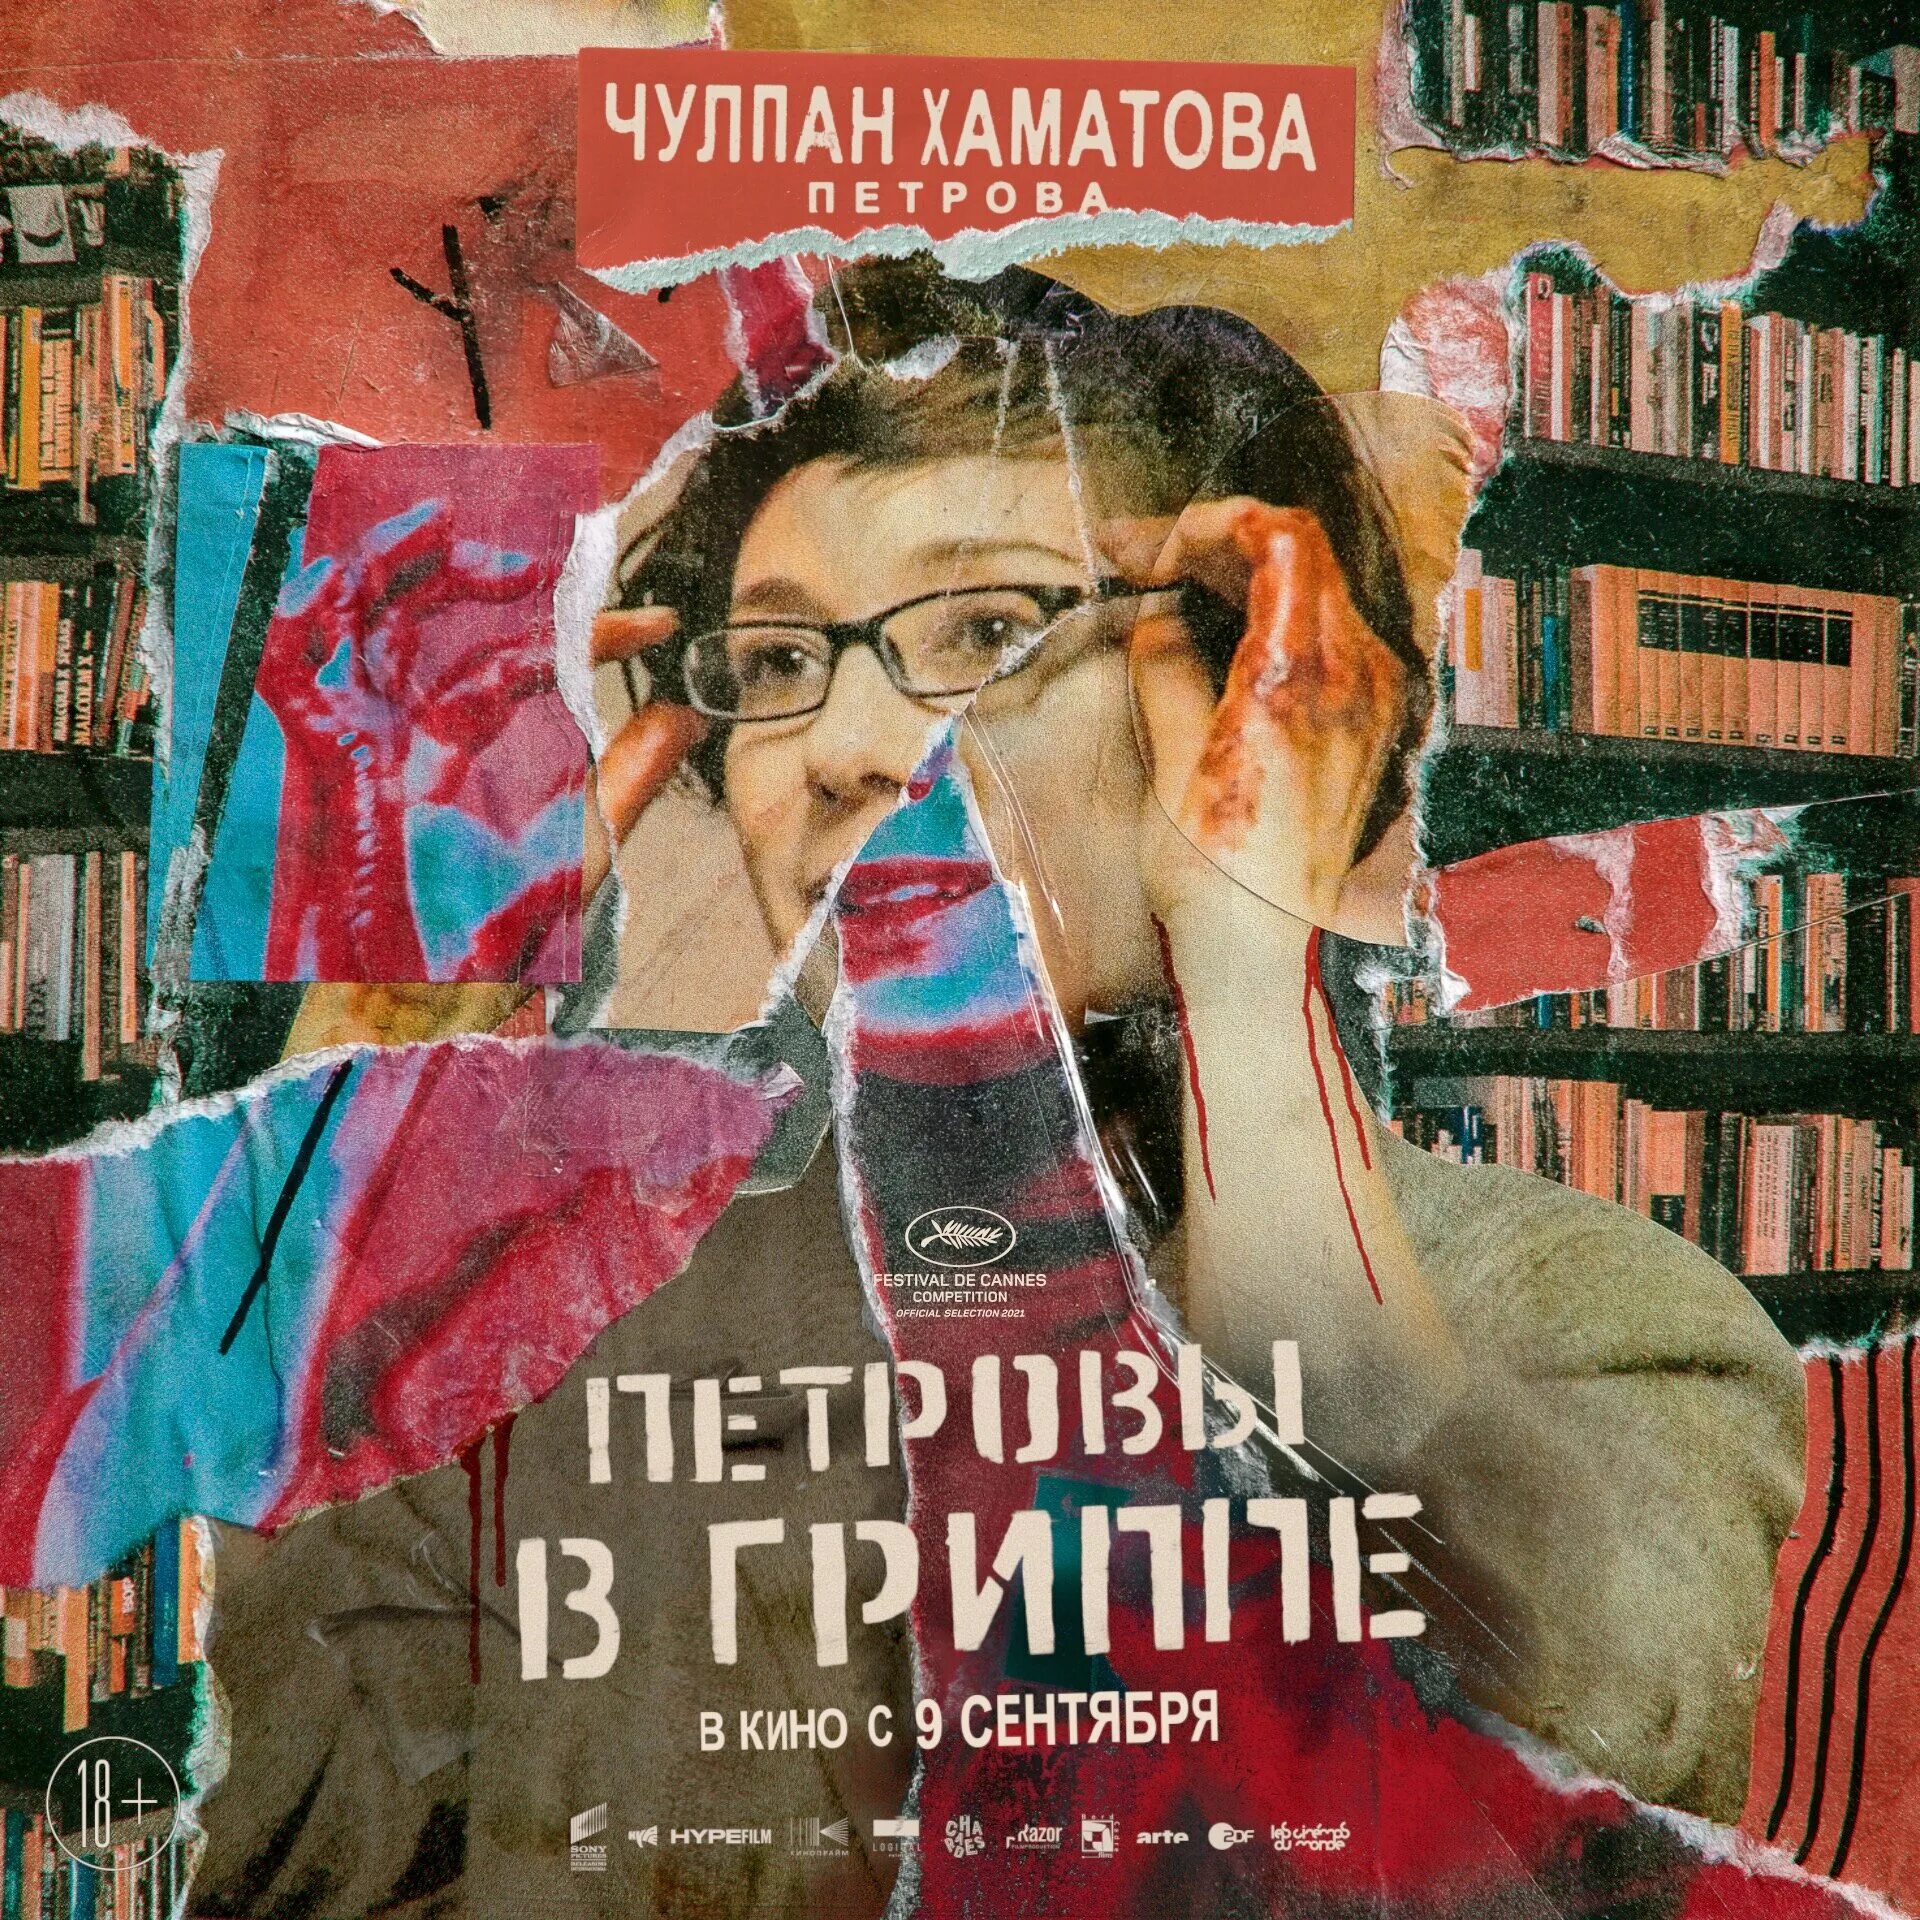 Гриппе 2020. Петровы в гриппе (2021).